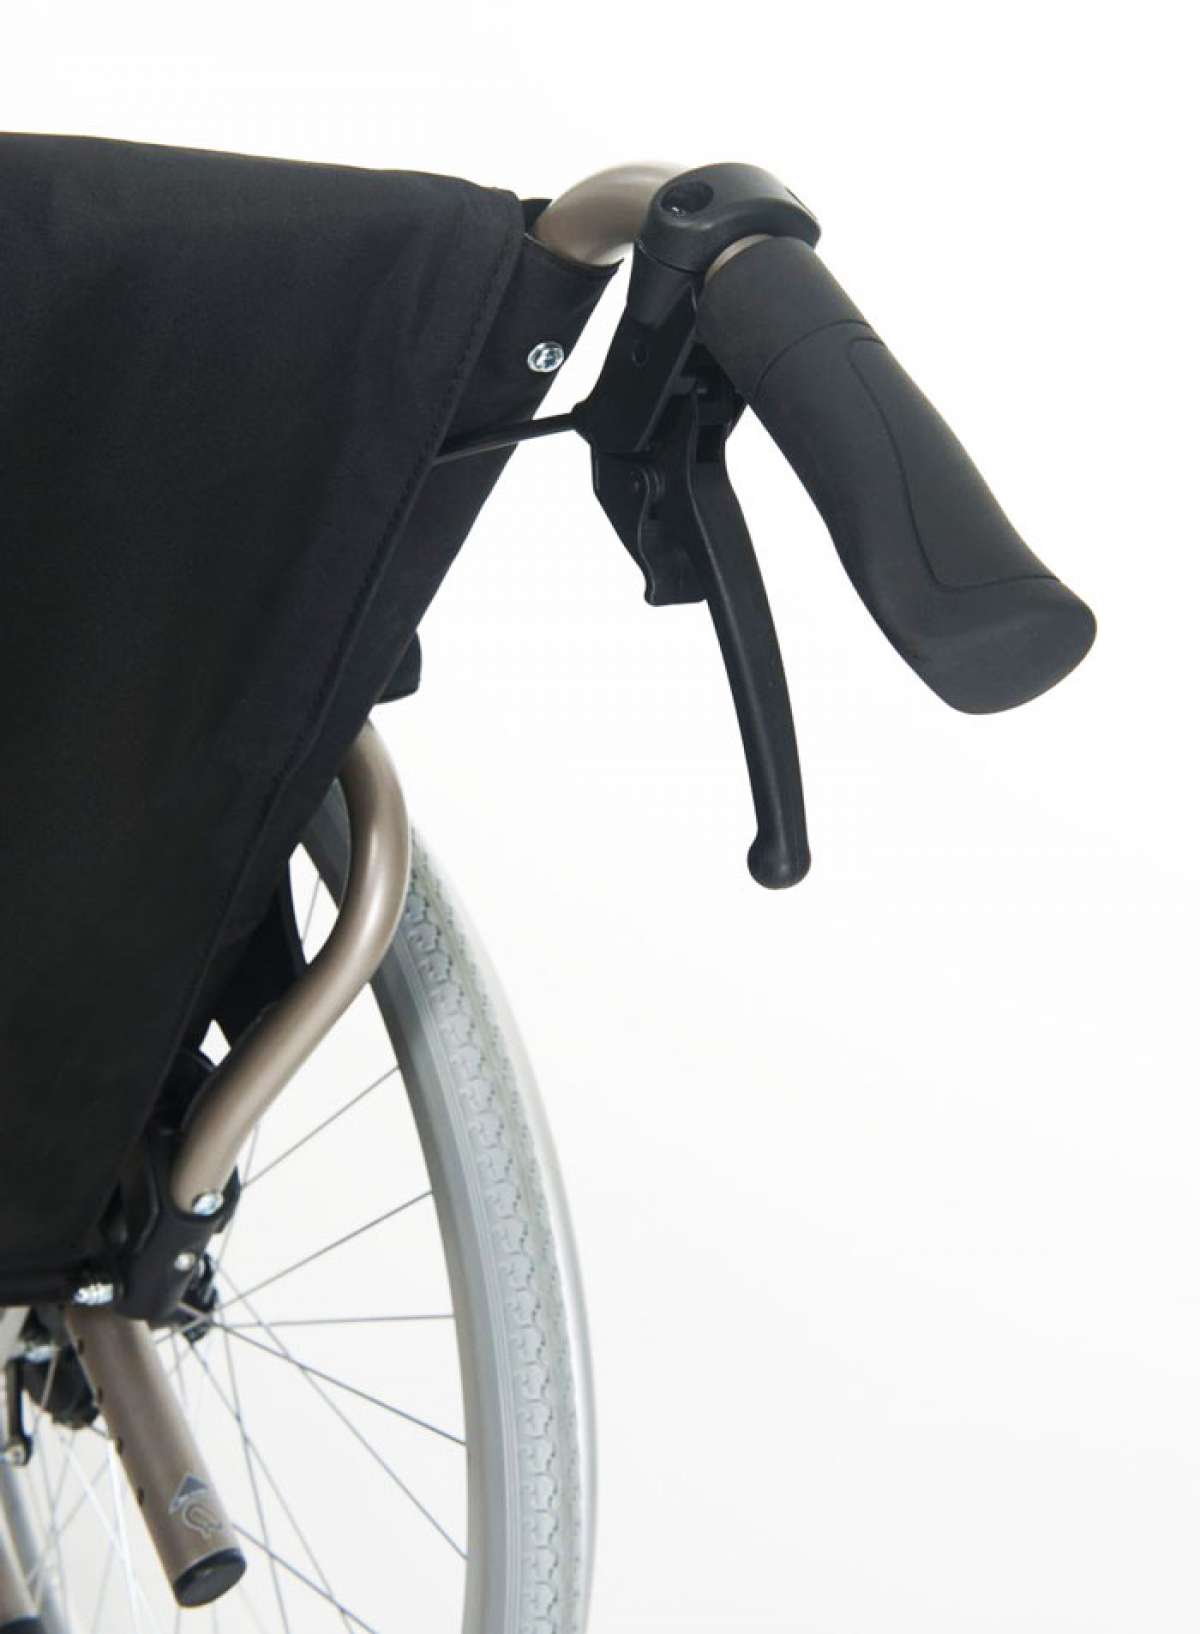 Инвалидное кресло-коляска V200XL